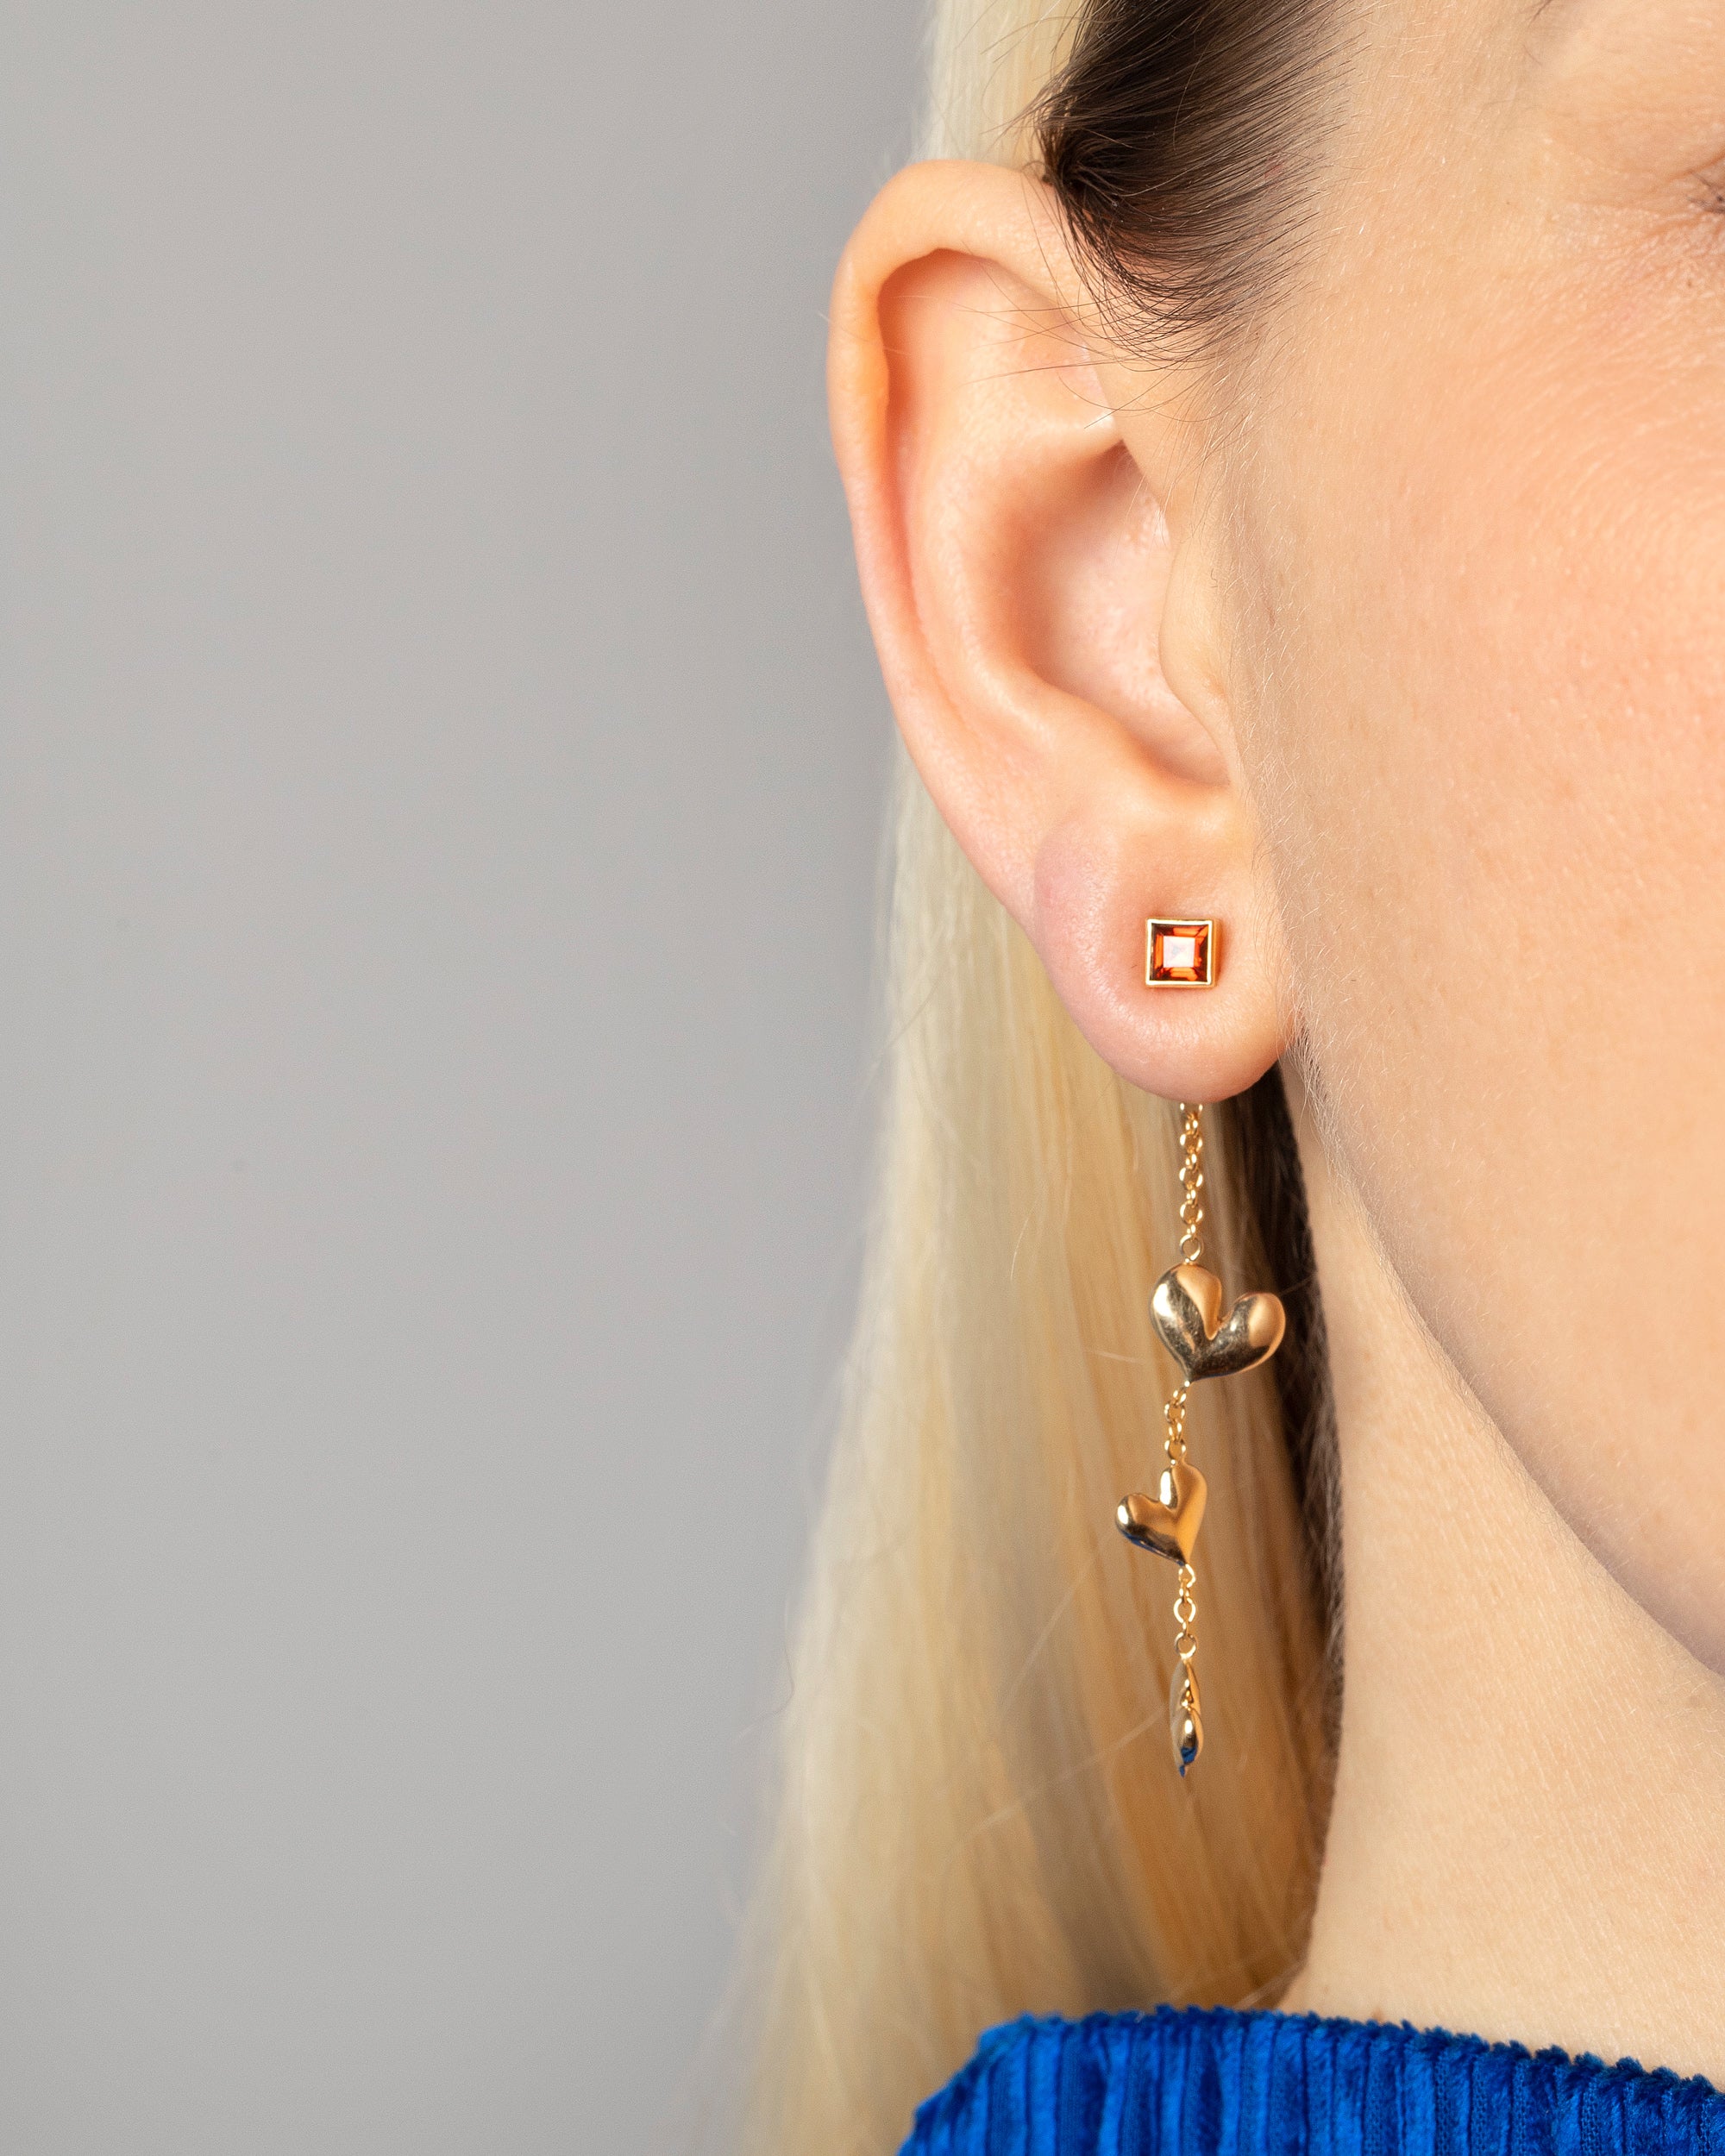 Inilbran Boho Crystal Ear Jacket Earrings Silver Rhinestone Studs Earrings  Vintage Crystal Rhinestone Jacket Earrings Sparkly Cz Crystal Front Back Earrings  Jewelry for Women and Girls : Amazon.co.uk: Fashion